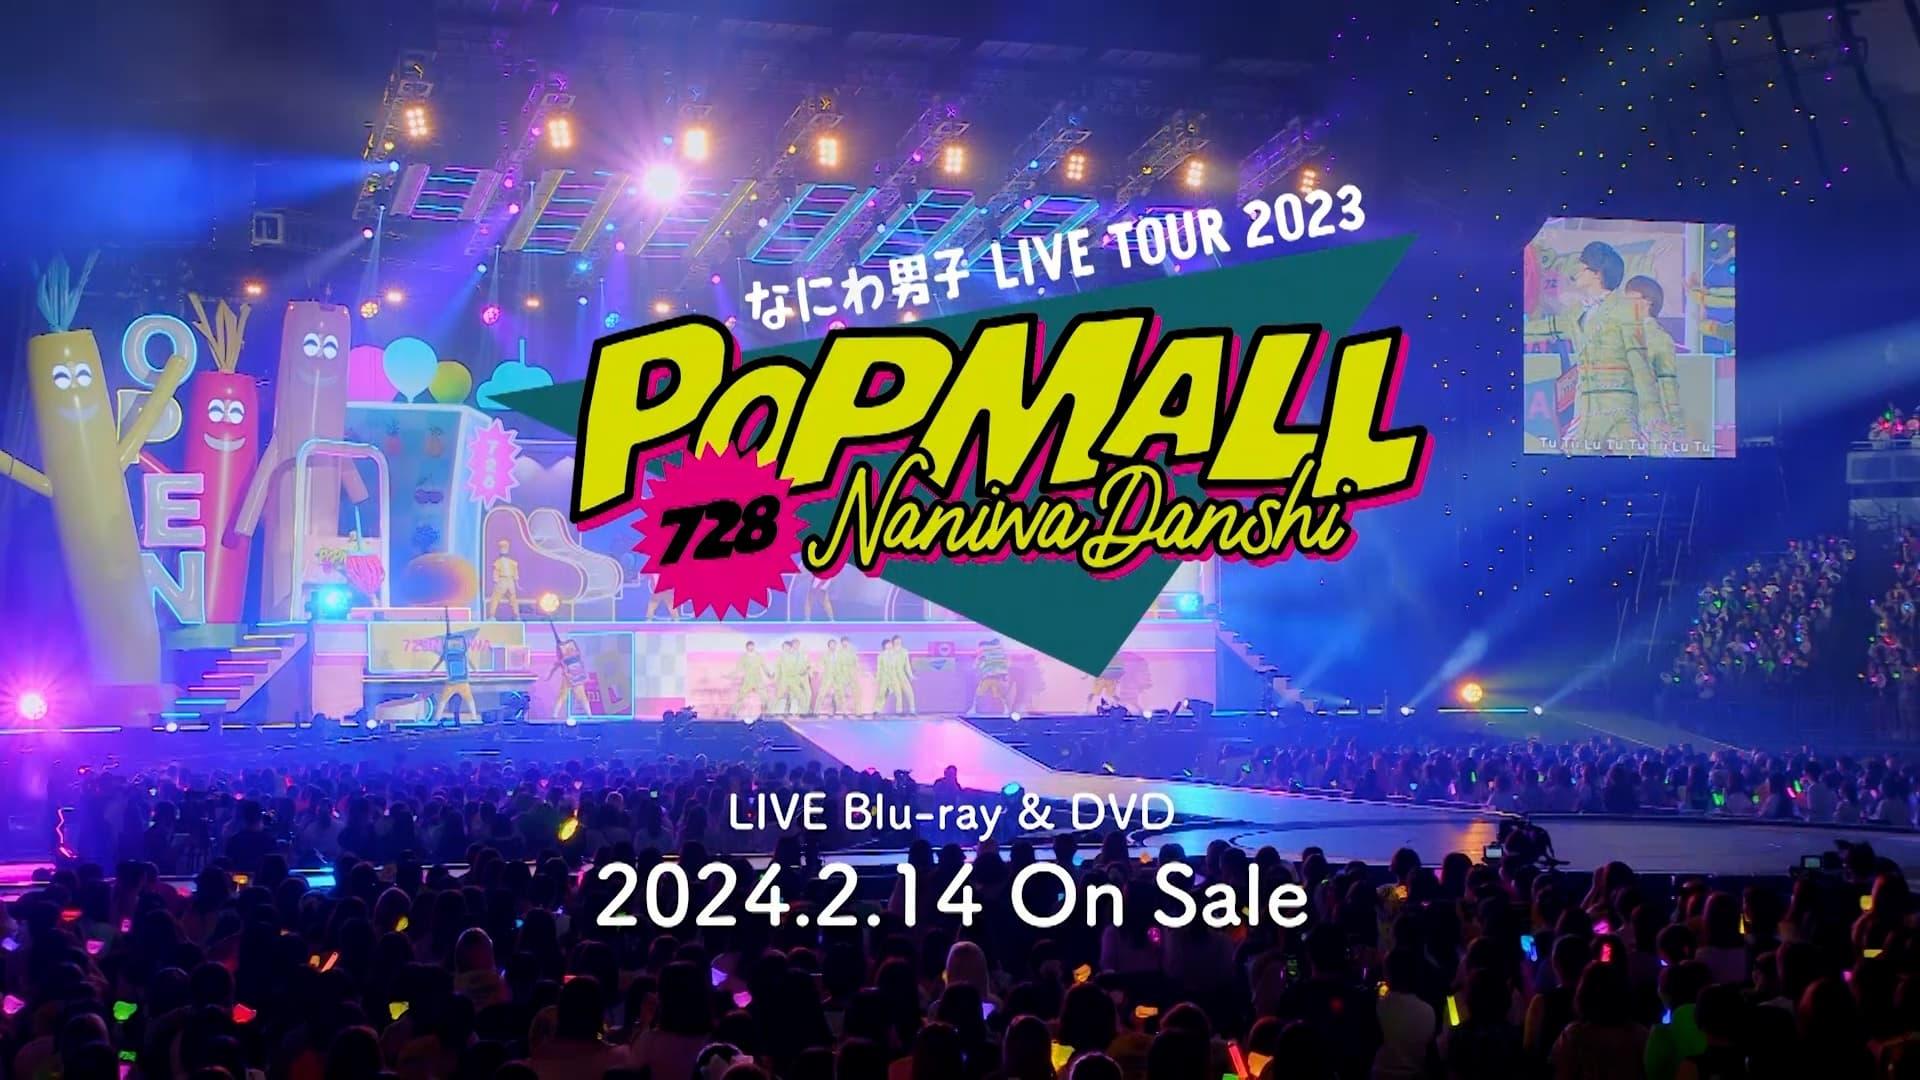 Naniwa Danshi LIVE TOUR 2023 'POPMALL' backdrop